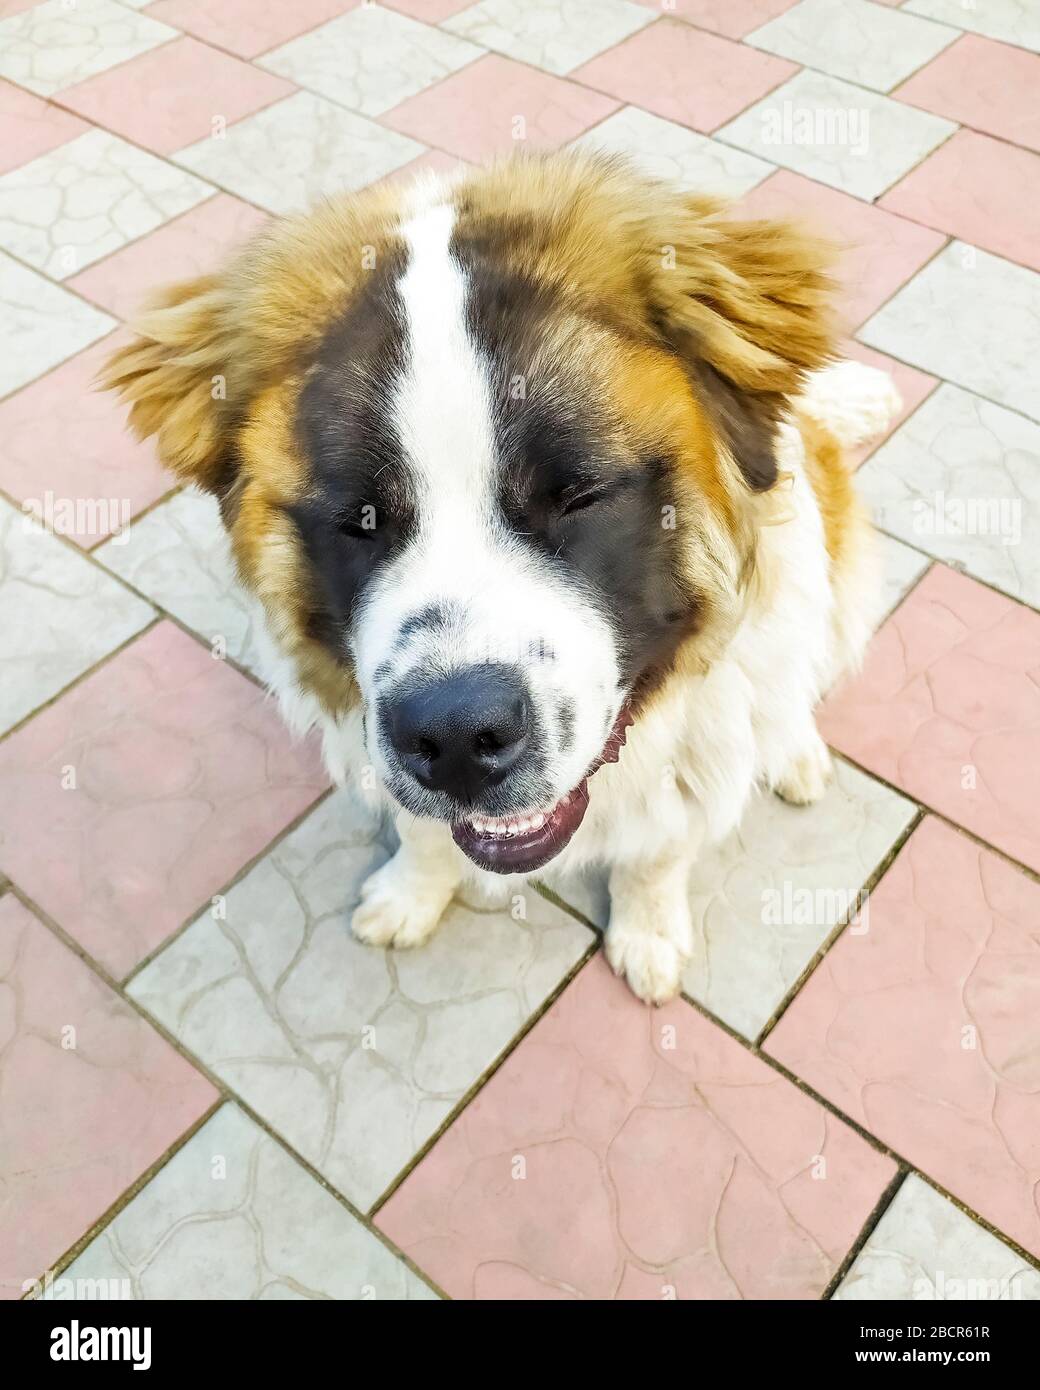 Moskau Wache Hund braune Farbe. Haustier. Flauschig und schöner Hund  Stockfotografie - Alamy